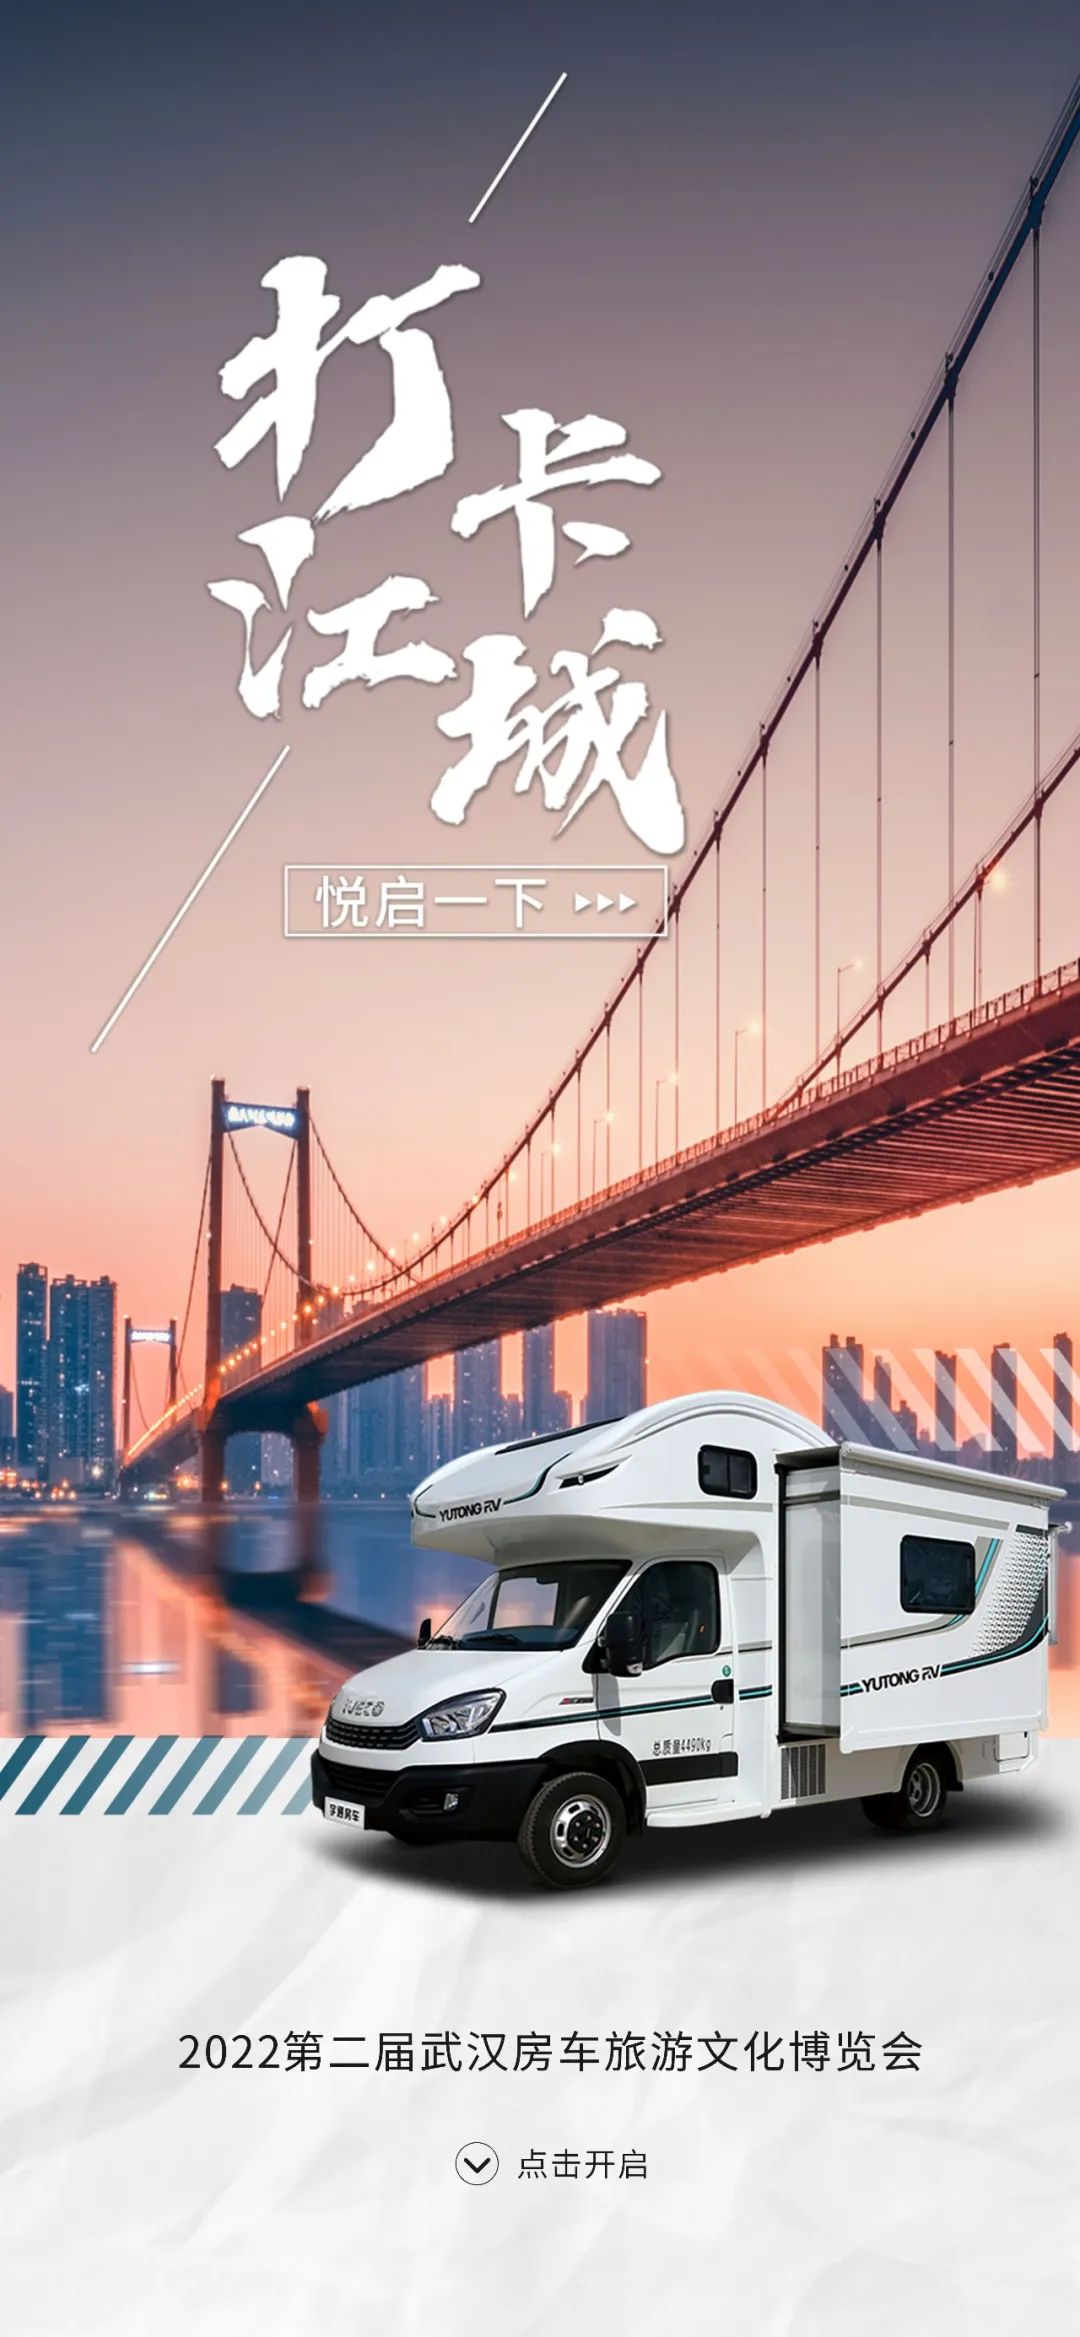 宇通房车邀您一起探索2022第二届武汉房车旅游文化博览会